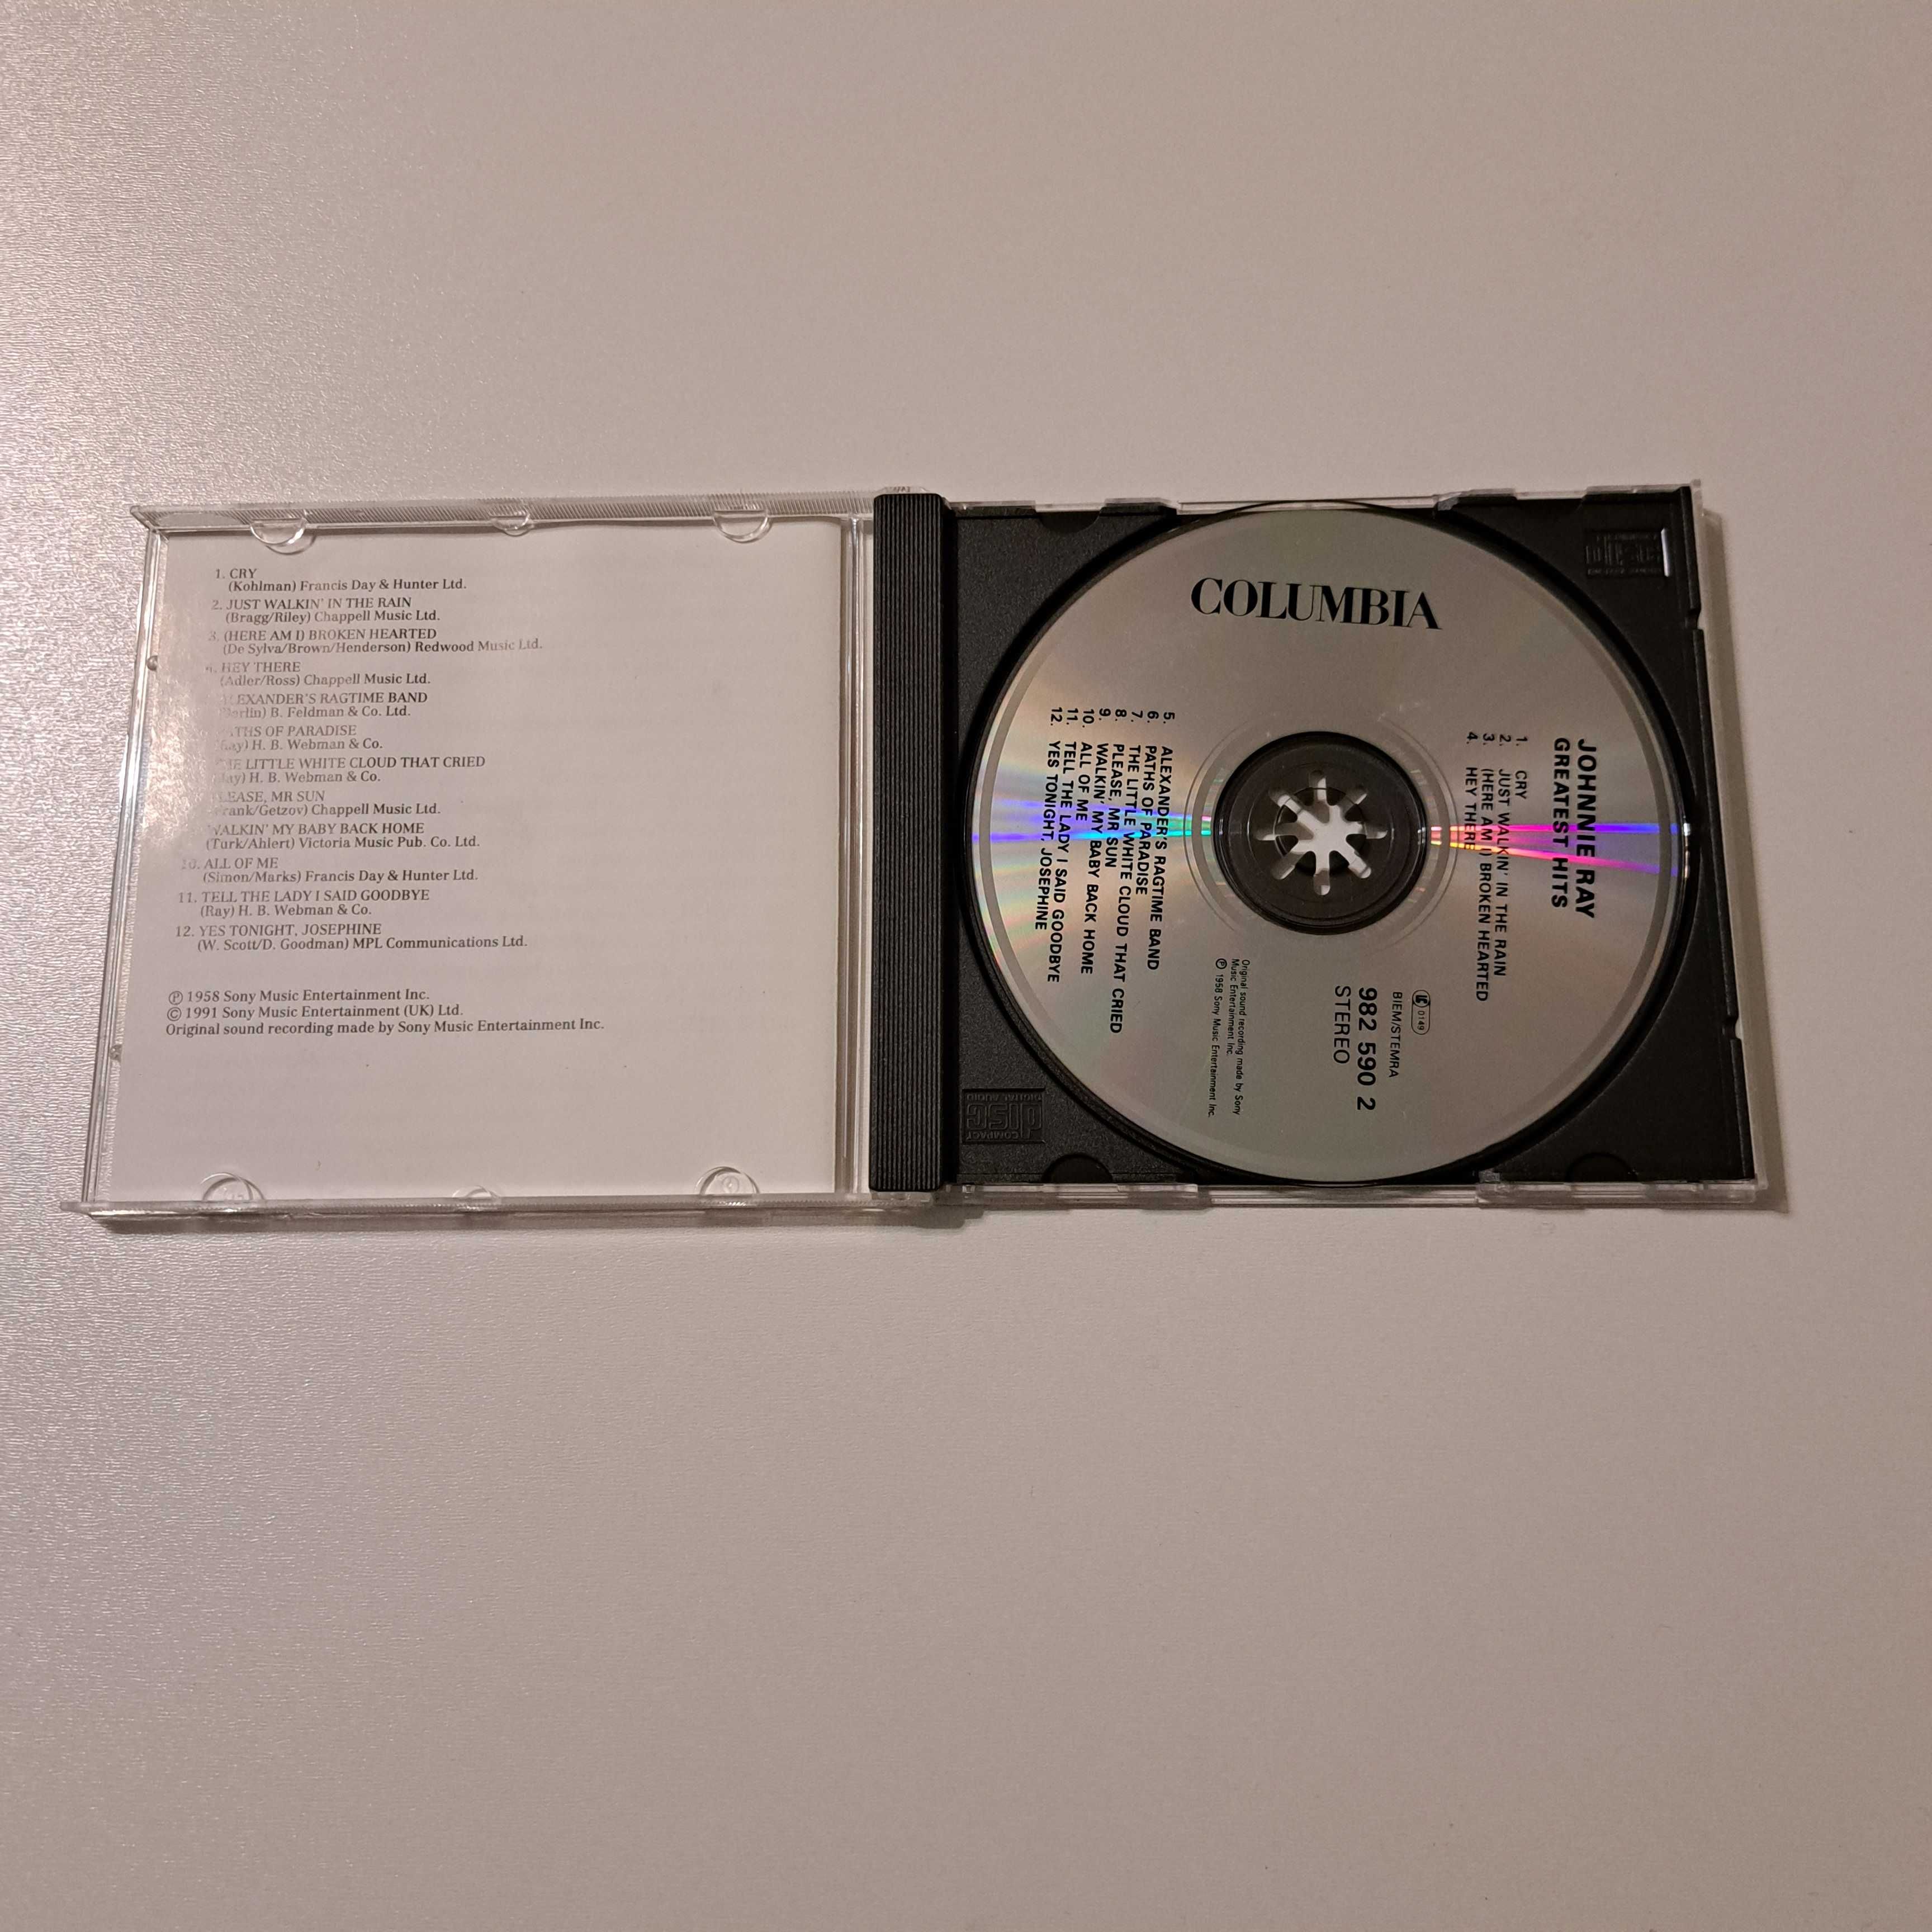 Płyta CD  Johnnie Ray's - Greatest Hits  nr729